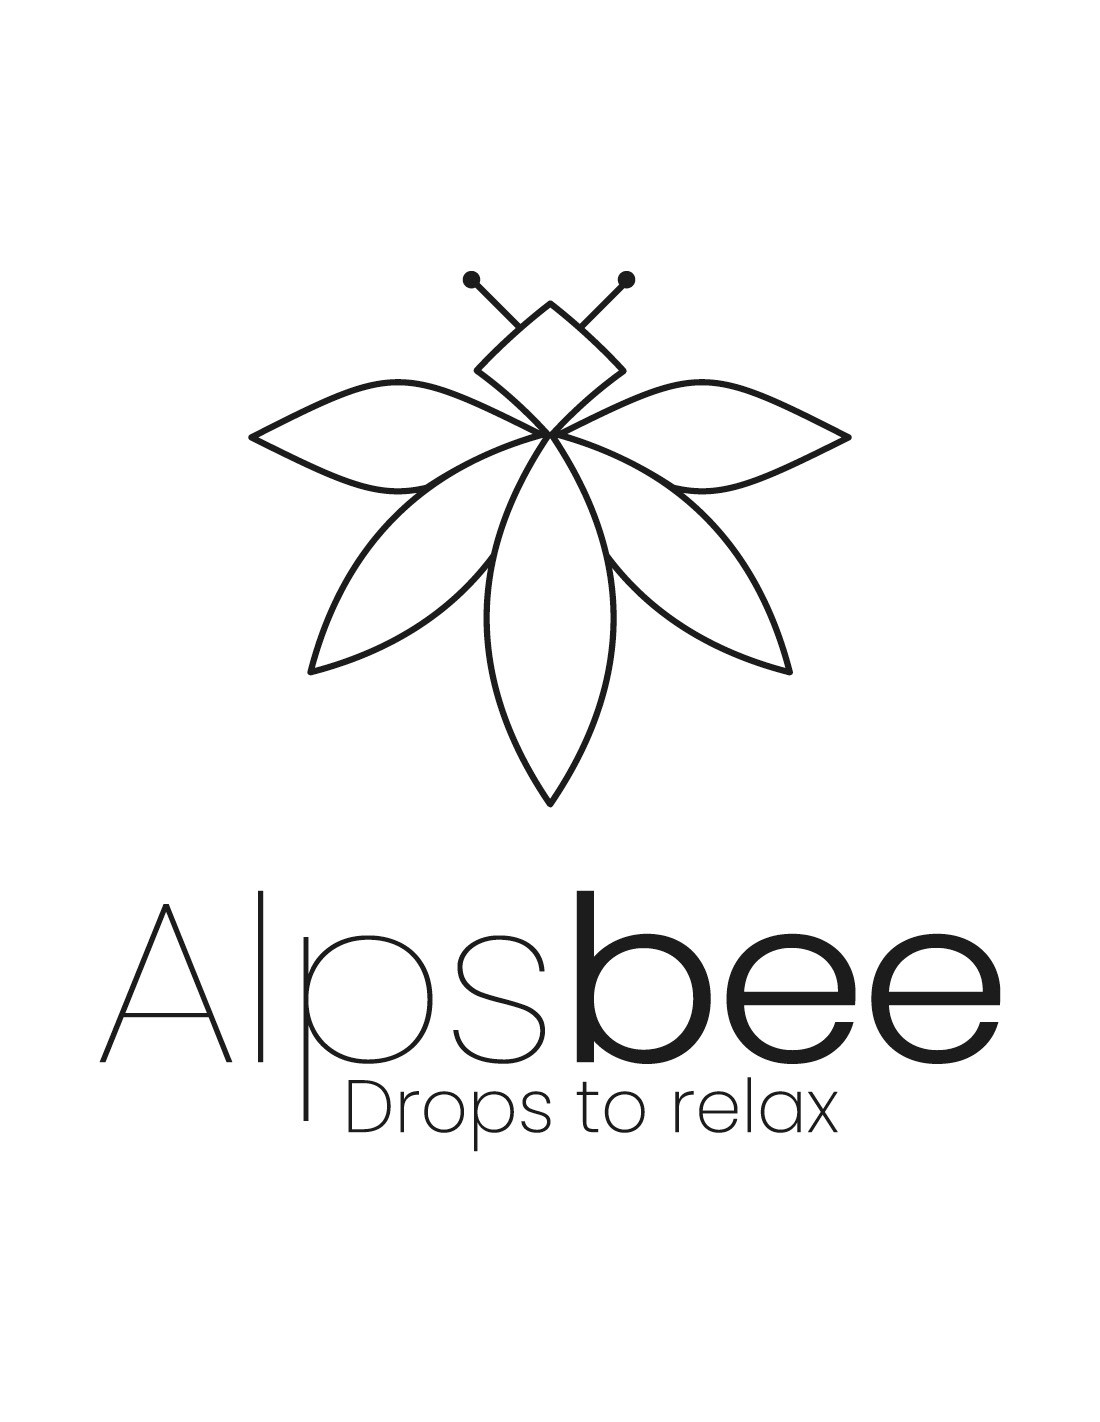 Alpsbee